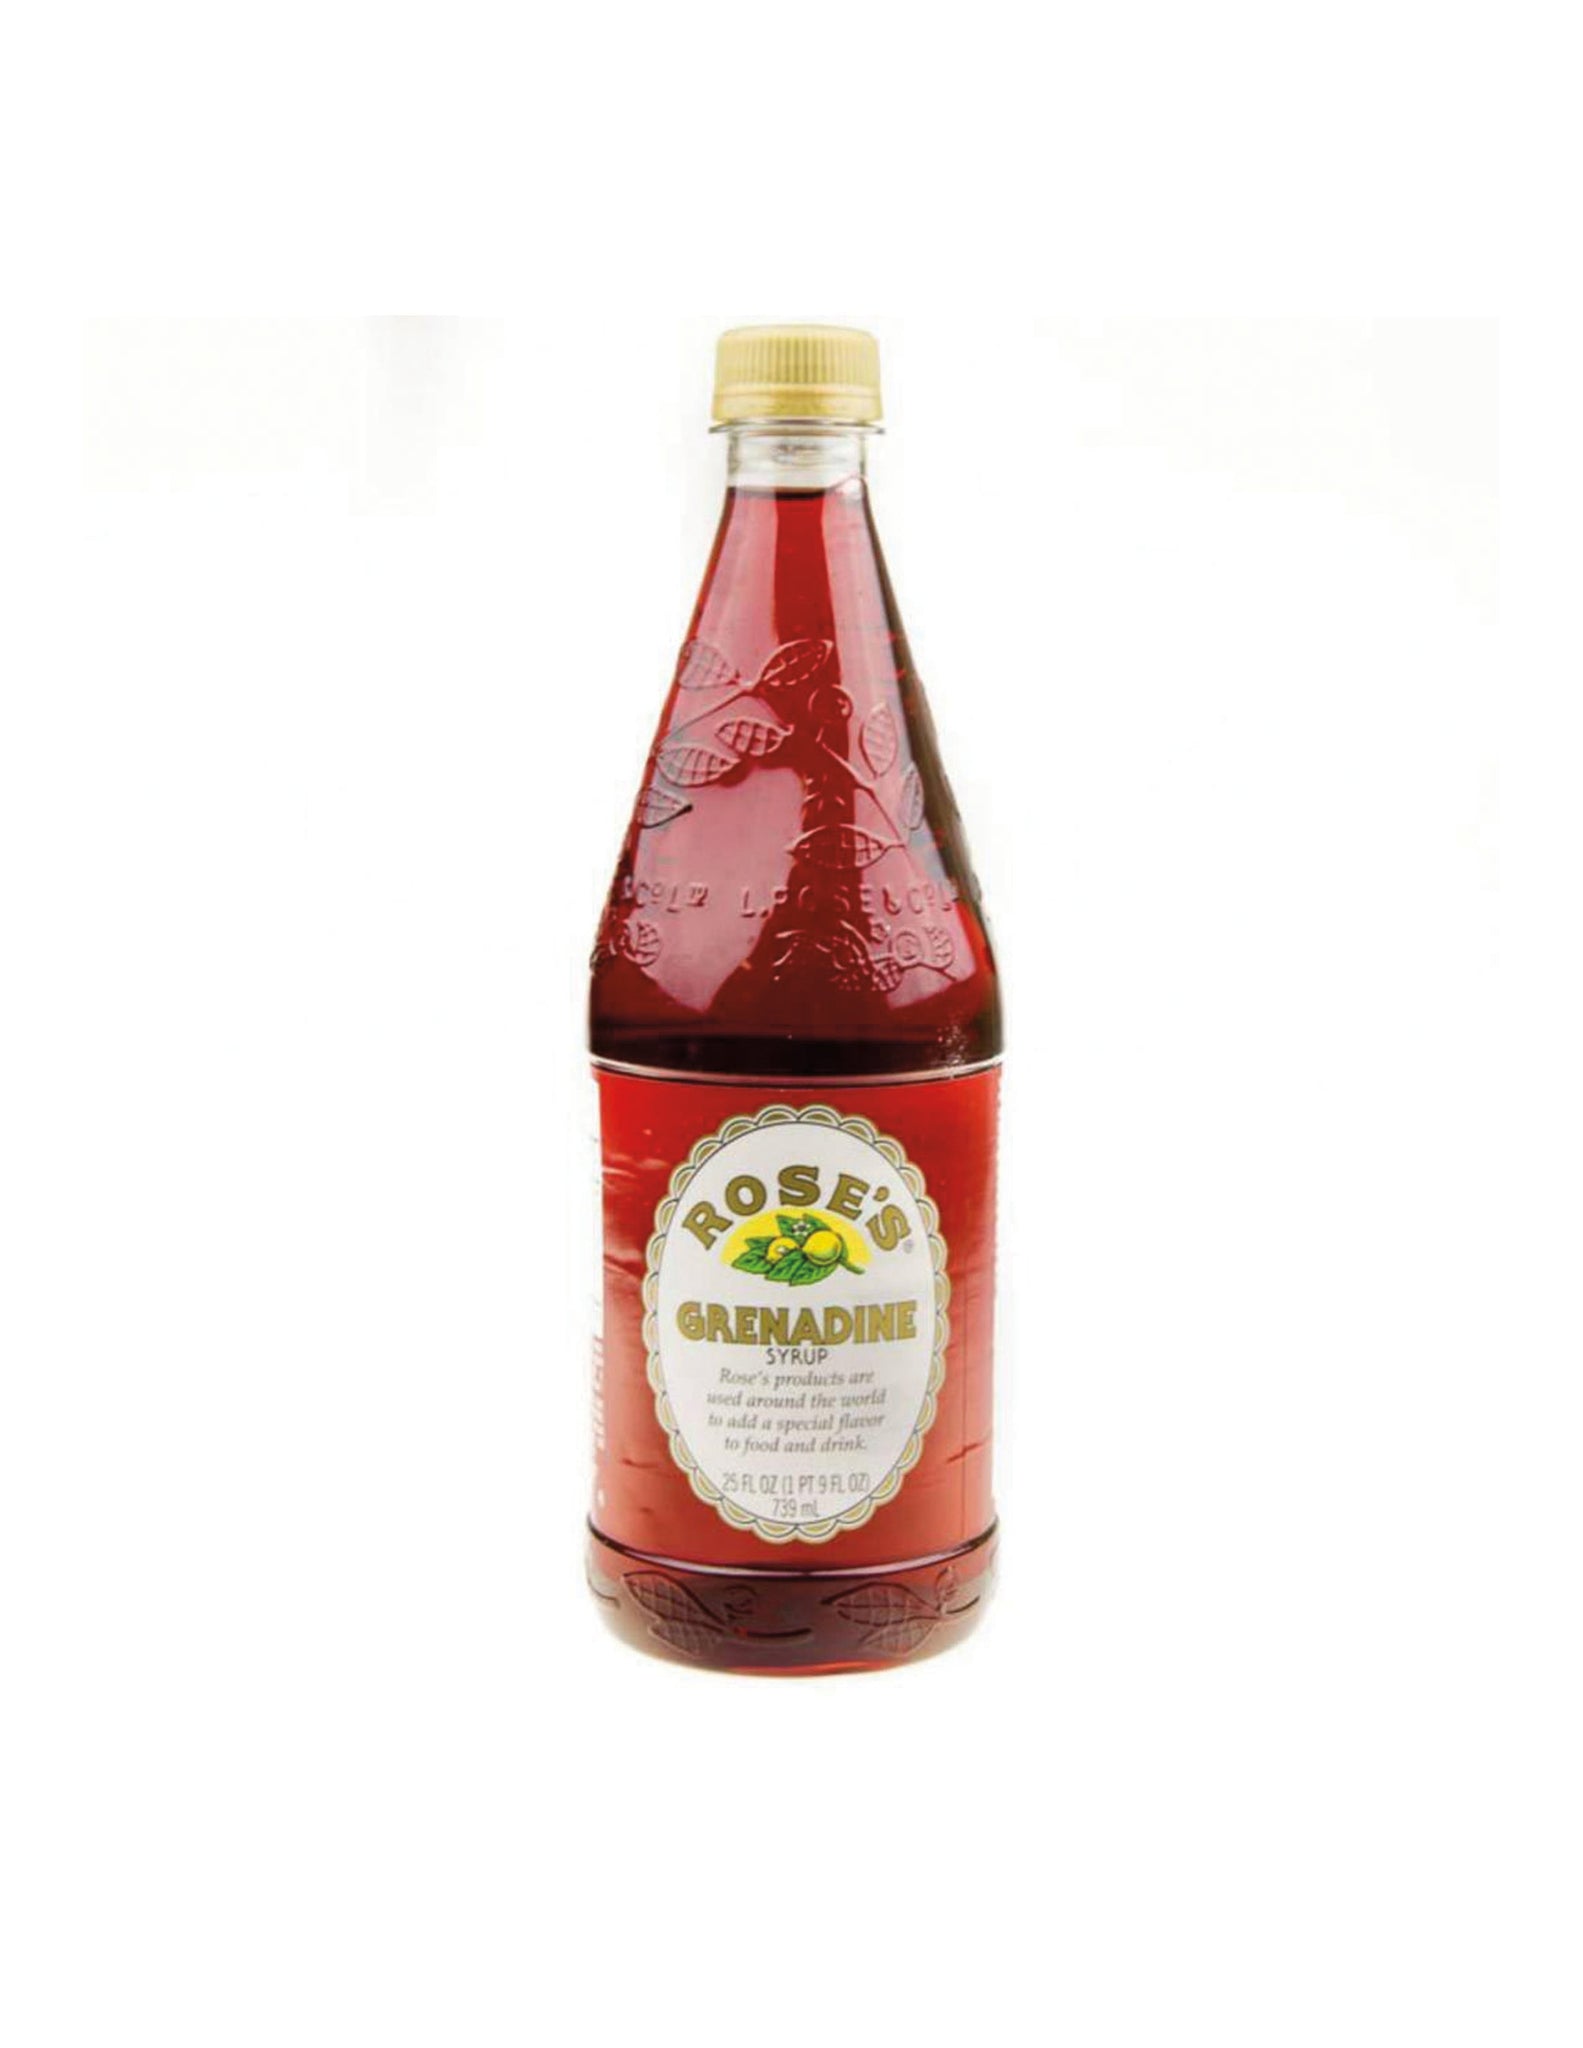 stl>Rose's Grenadine Syrup - 25 oz